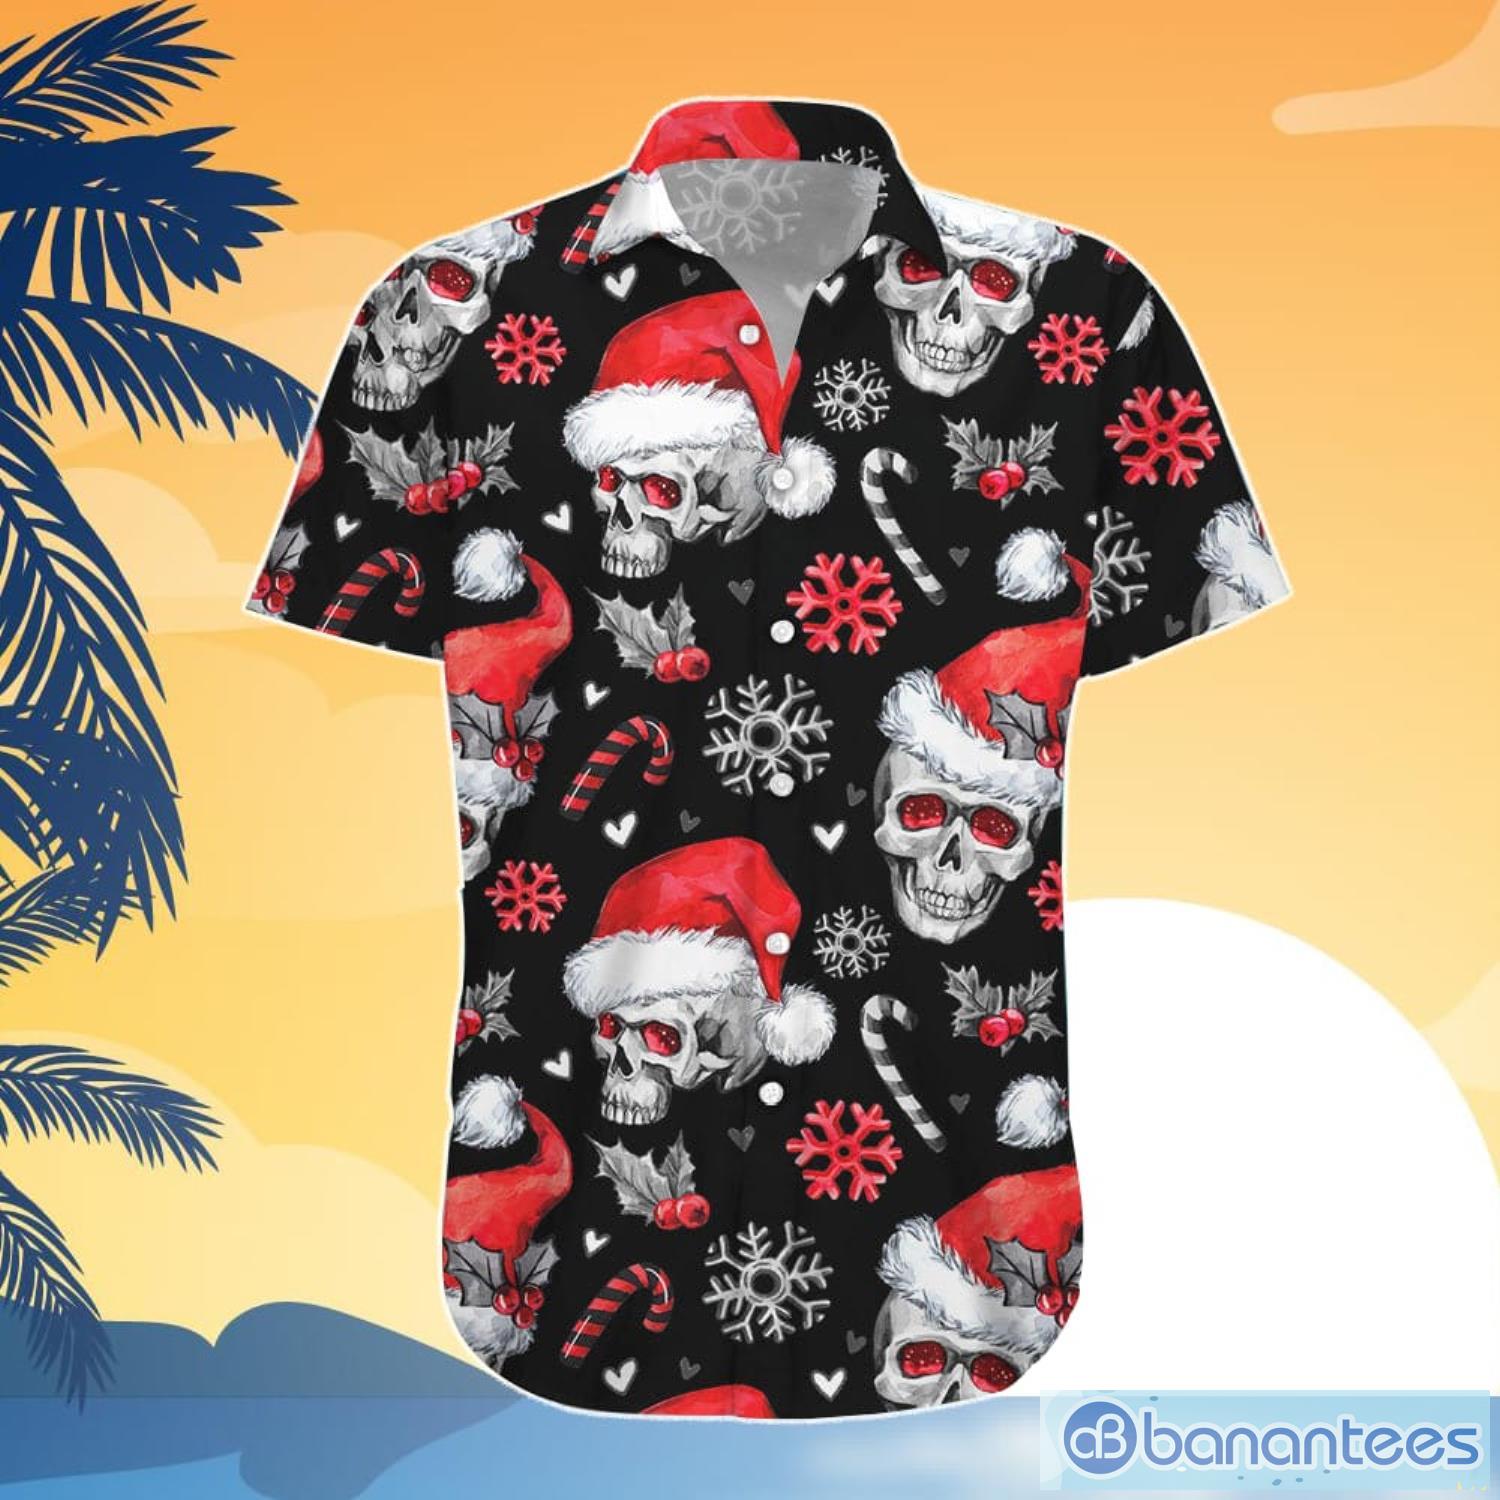 Christmas Skull Hawaiian Shirt And Shorts Christmas Skulls With Candy Canes Aloha Shirt Christmas Gifts For Men - Christmas Skull Hawaiian Shirt - Christmas Skulls With Candy Canes Aloha Shirt - Christmas Gifts For Men_4